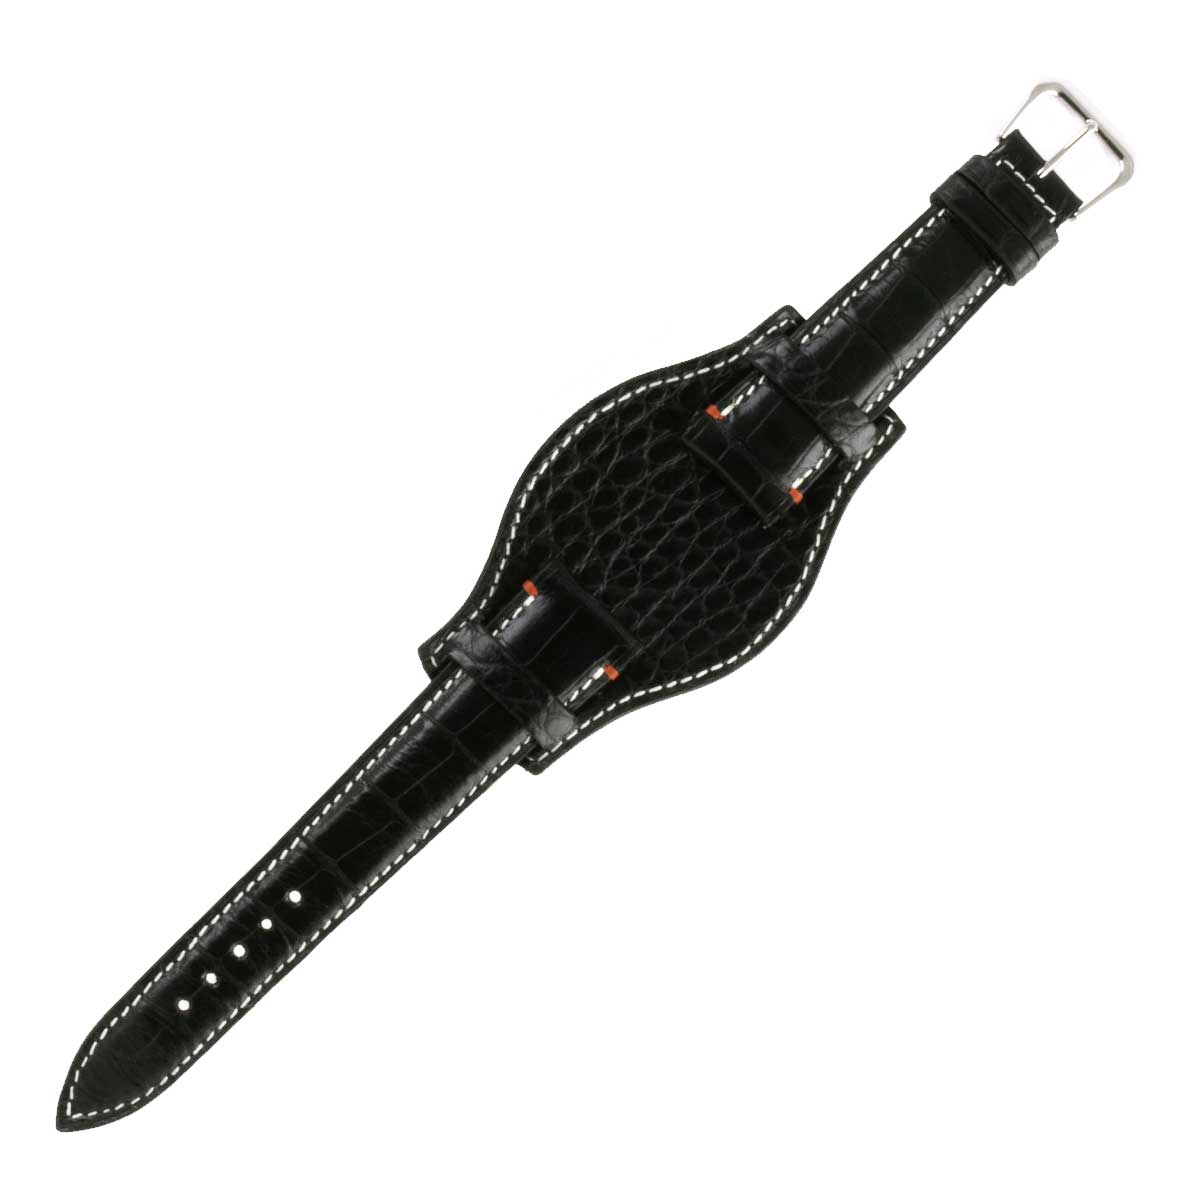 ABP Concept X Hanhart 1882 Bund watch band for 417 ES watches - Waxed Radika alligator